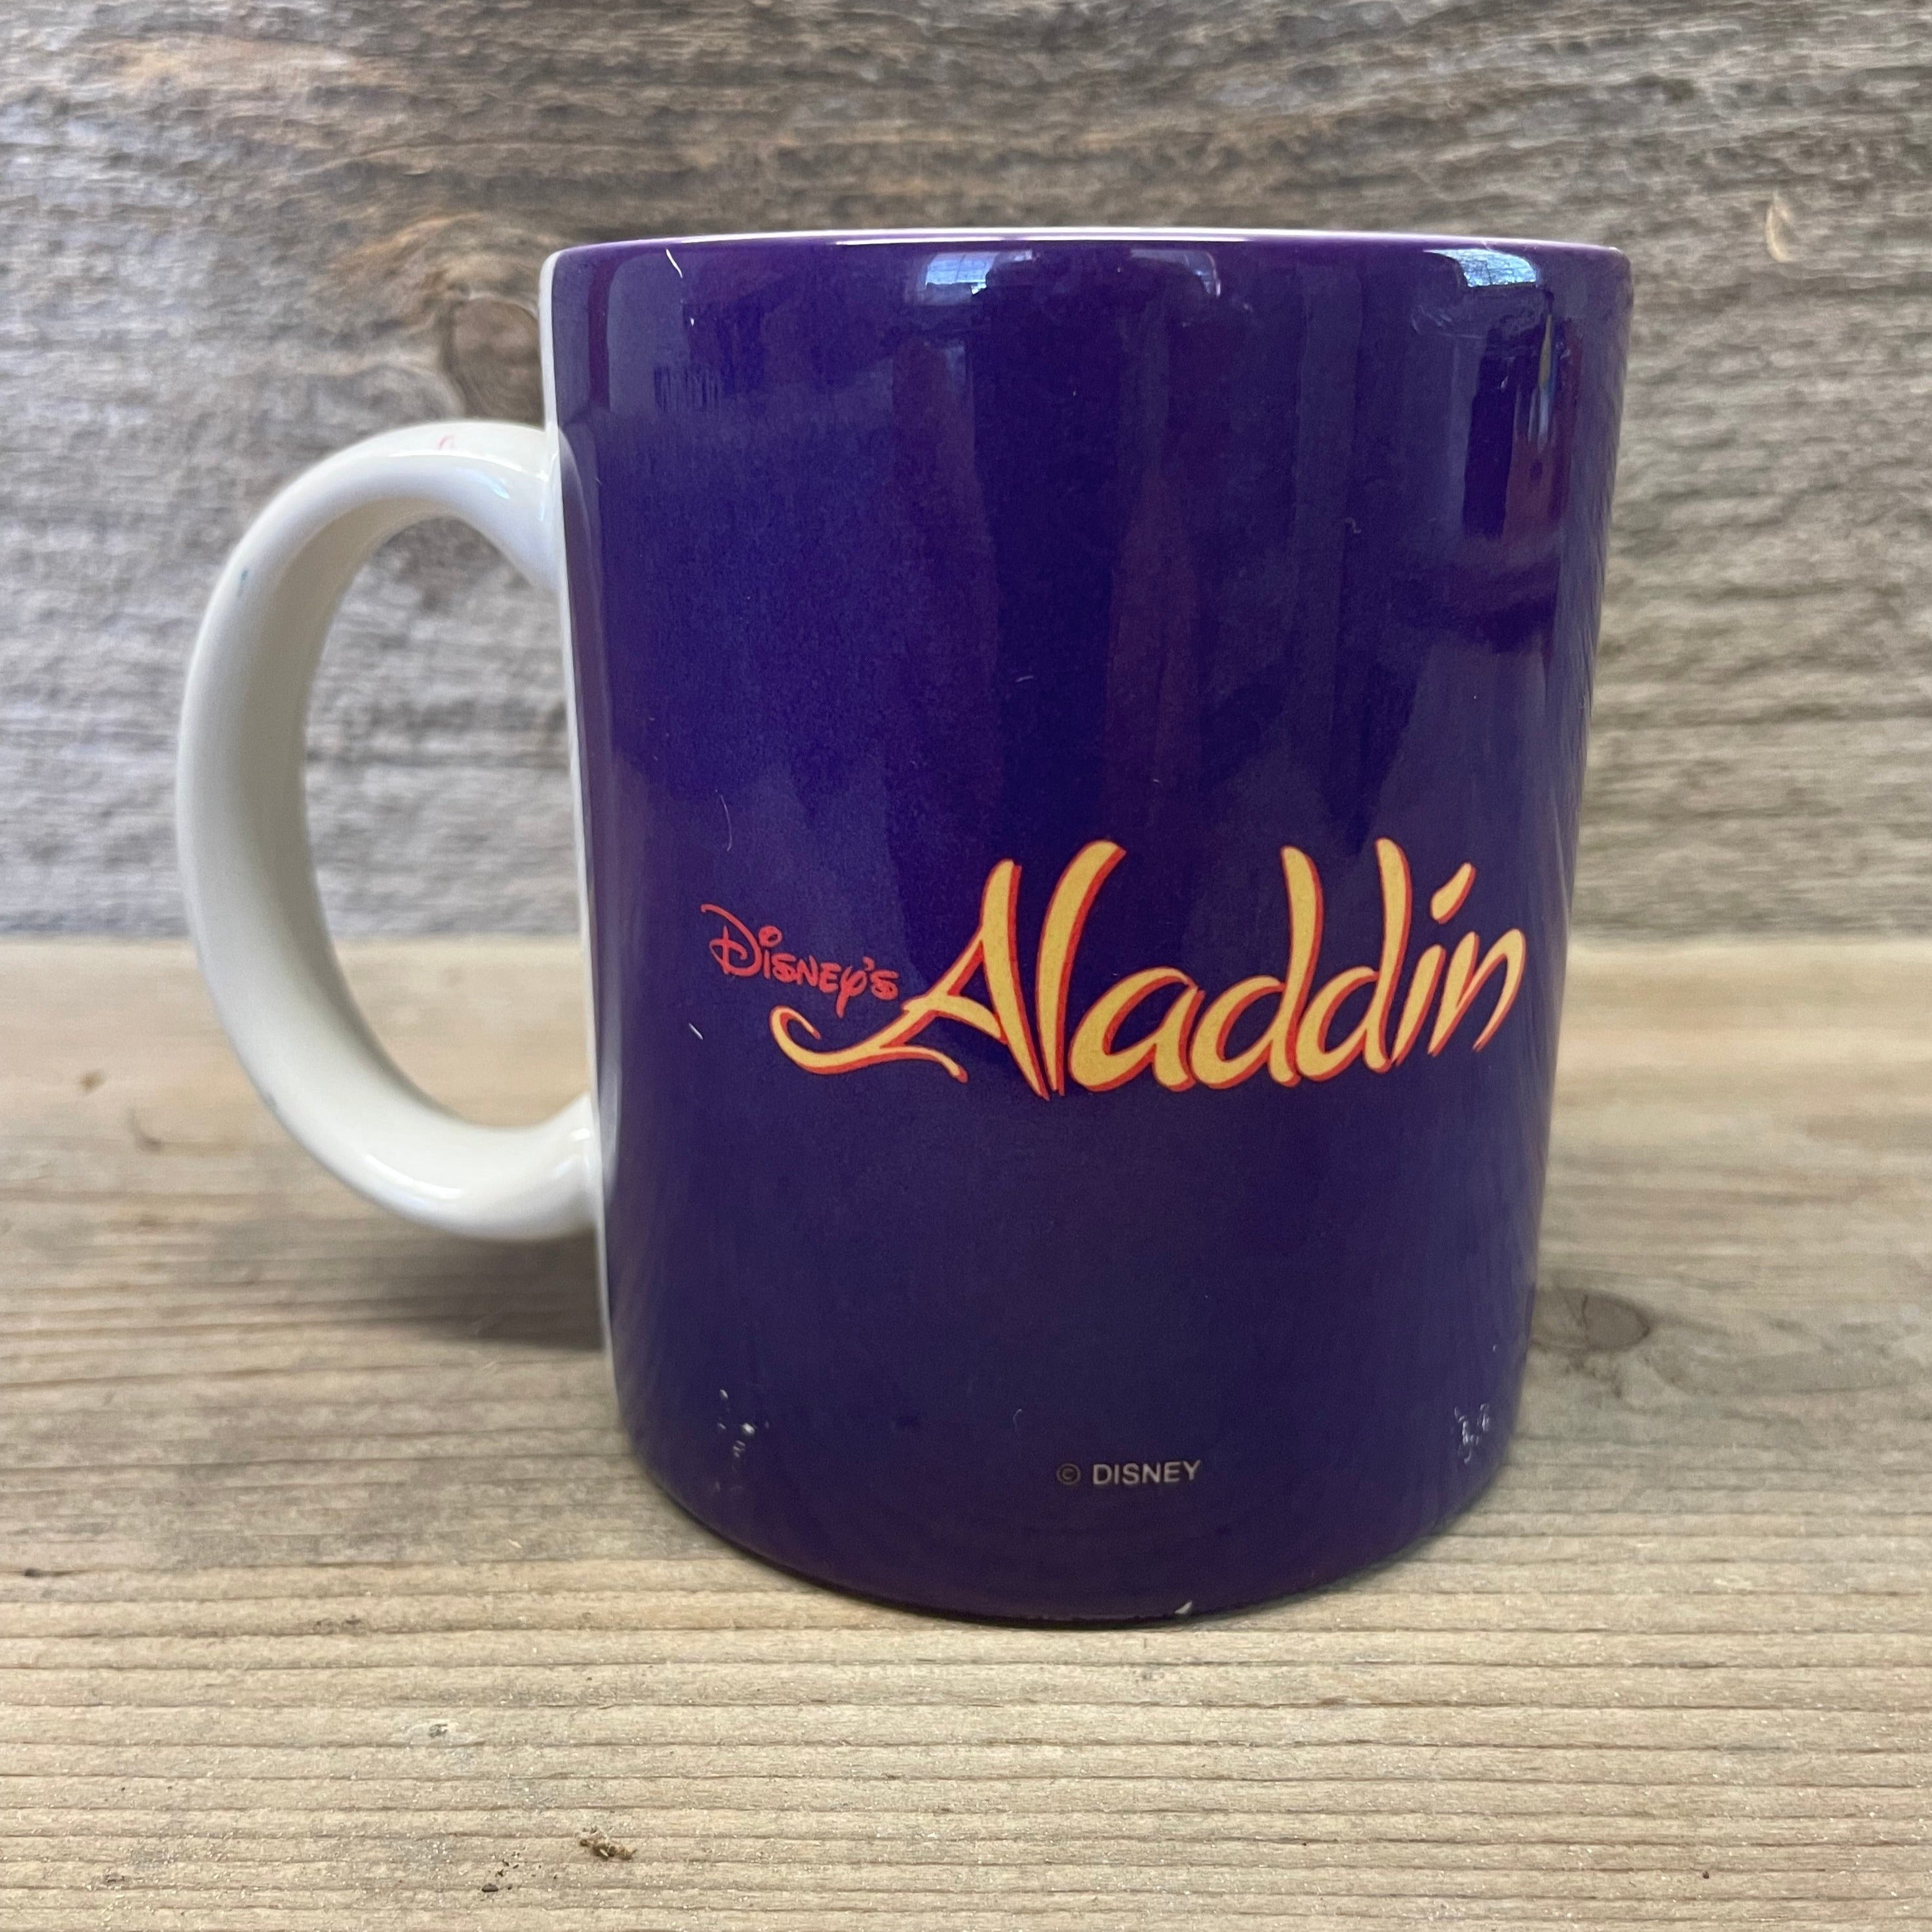 Disney's Aladdin Mug